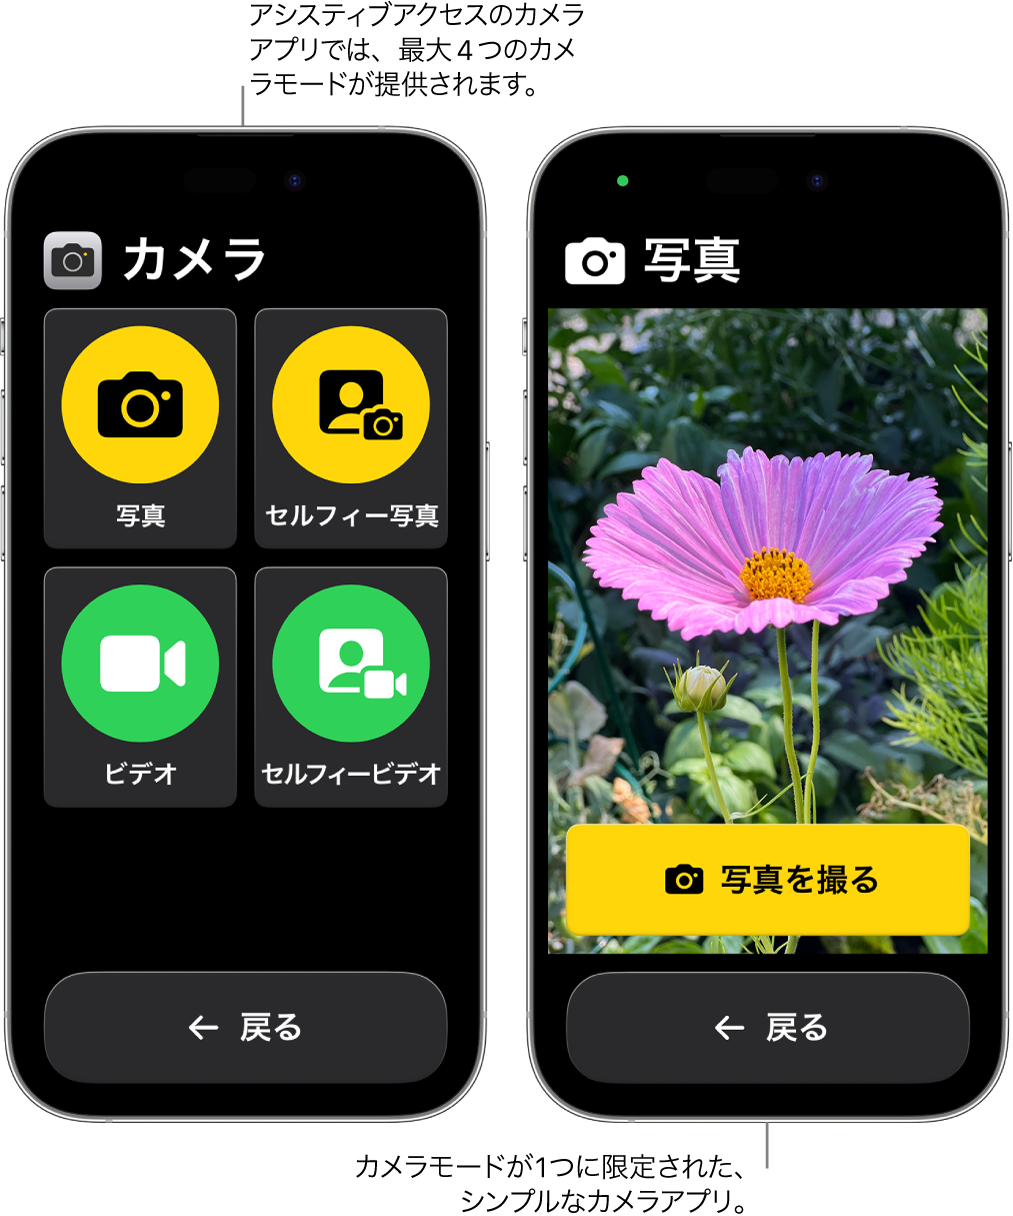 アシスティブアクセスを使用している2台のiPhone。一方のiPhoneにはカメラアプリが表示されていて、ユーザは「ビデオ」や「セルフィー写真」などのカメラモードを選択できます。もう一方のiPhoneには、1枚ずつ写真を撮影するモードのカメラアプリが表示されています。